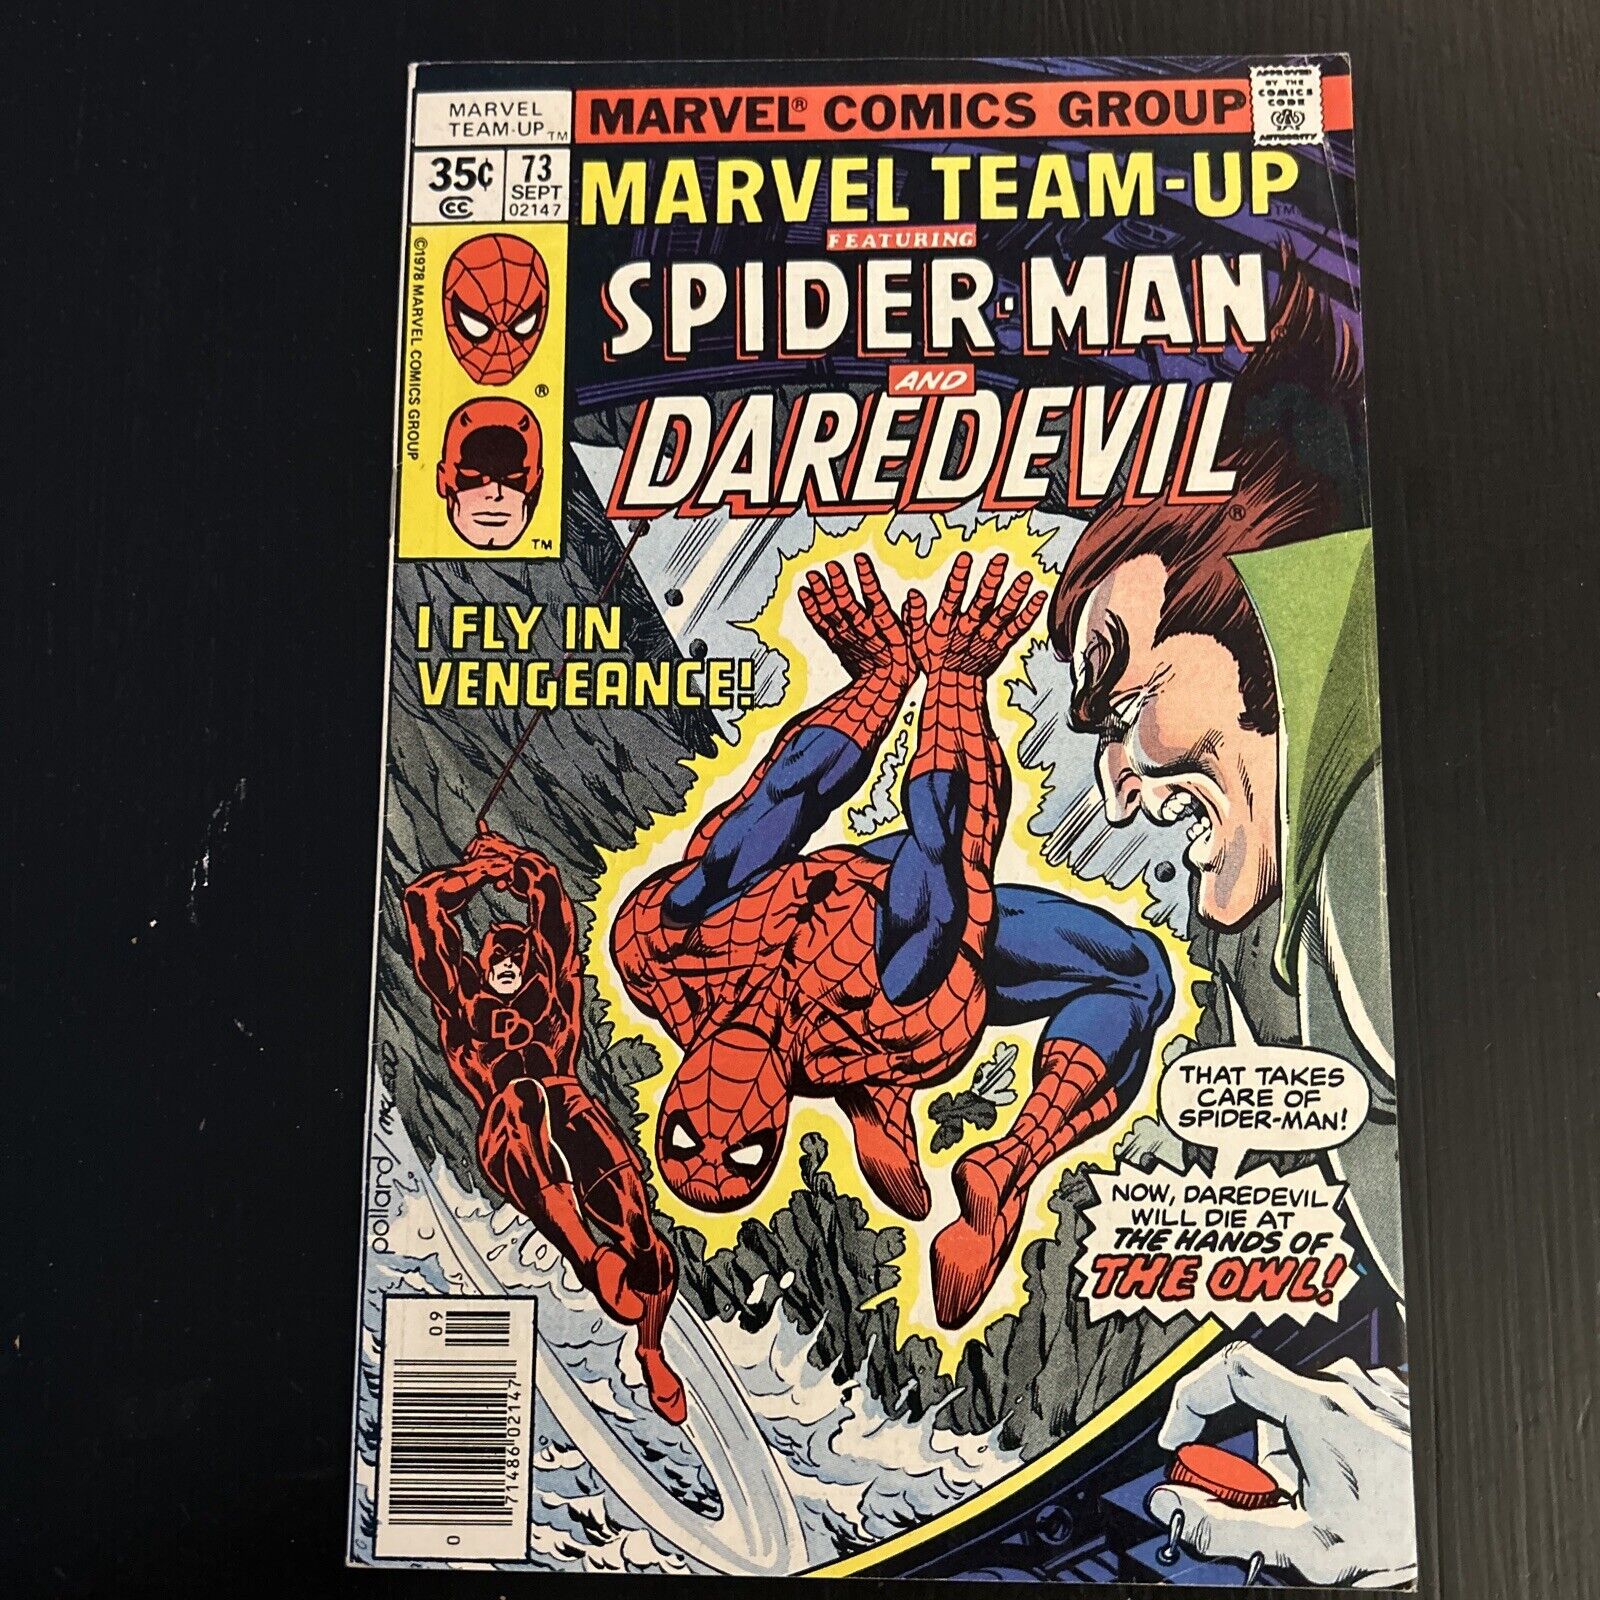 Marvel Team-Up Featuring Spider-Man & Daredevil #73 (1978) - Owl app Newsstand